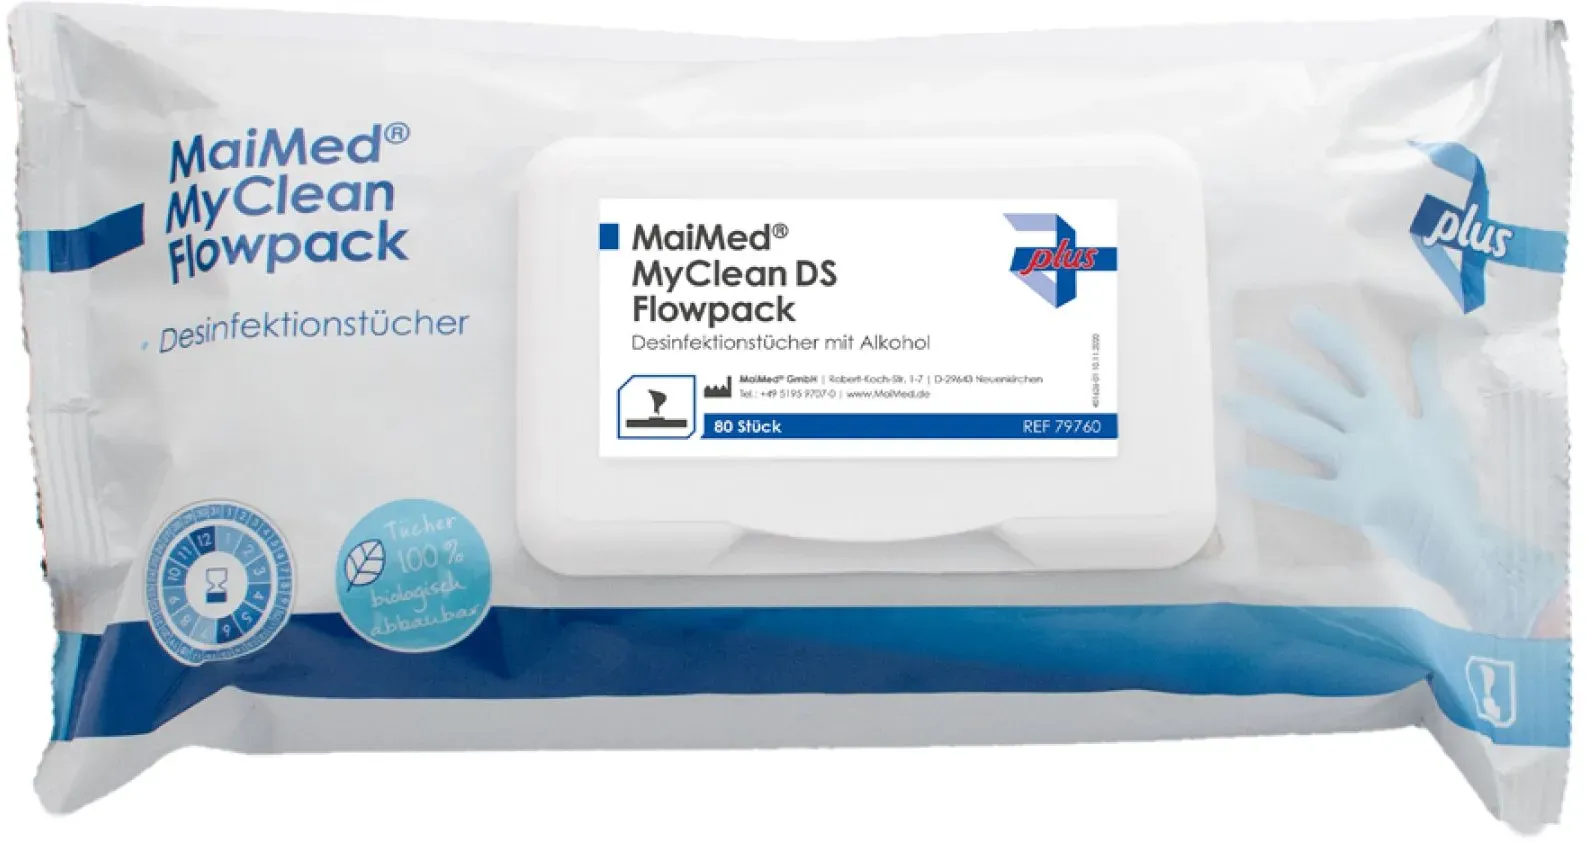 MaiMed MyClean Flowpack Desinfektionstücher mit Alc. 80 St